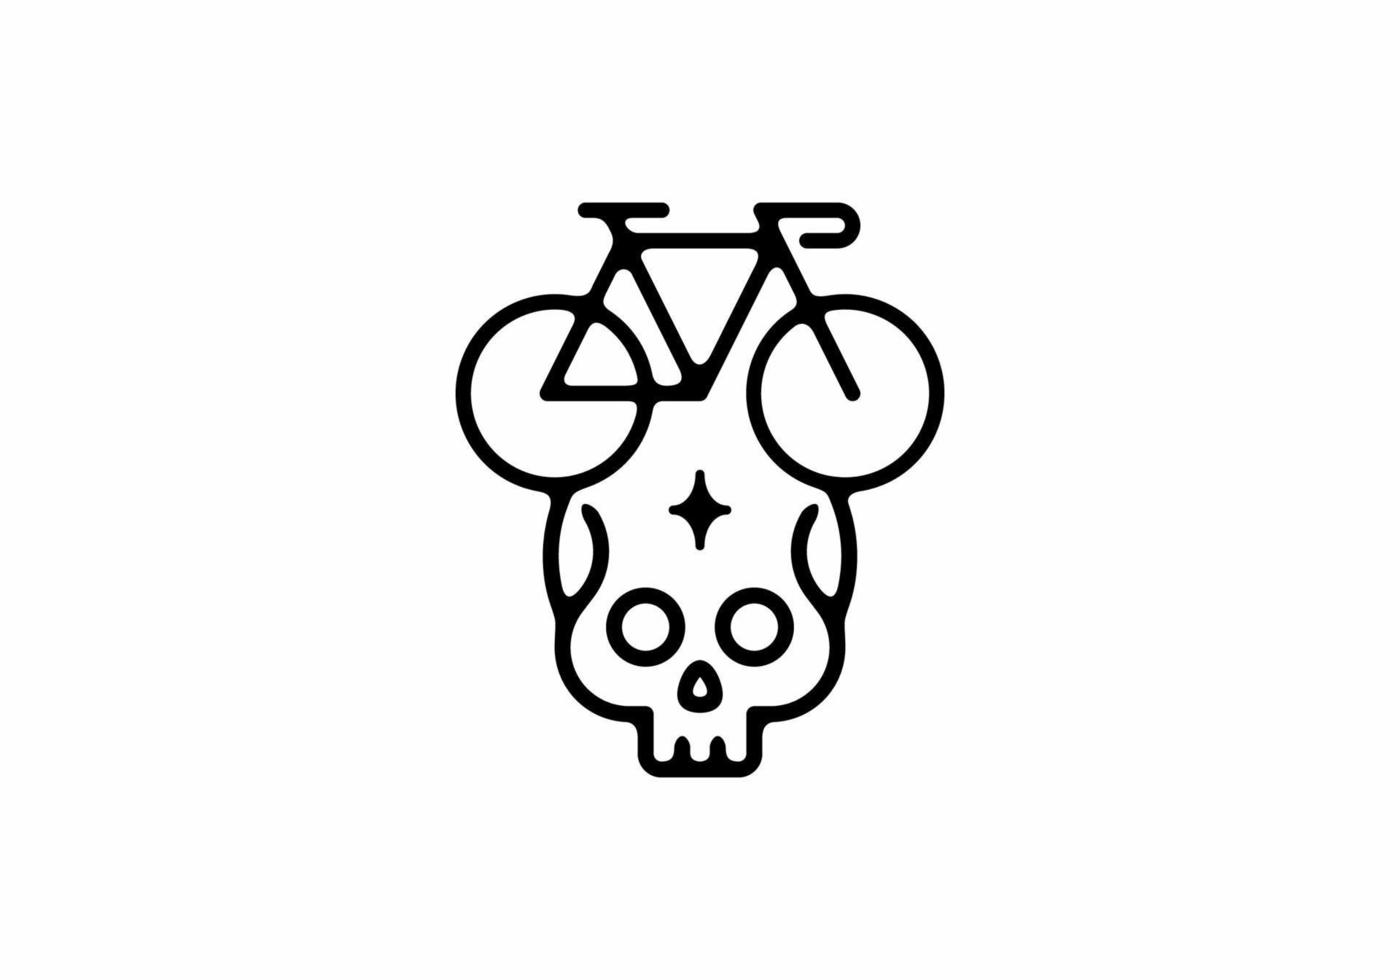 schwarze linie kunstillustration des fahrrads in der schädelform vektor